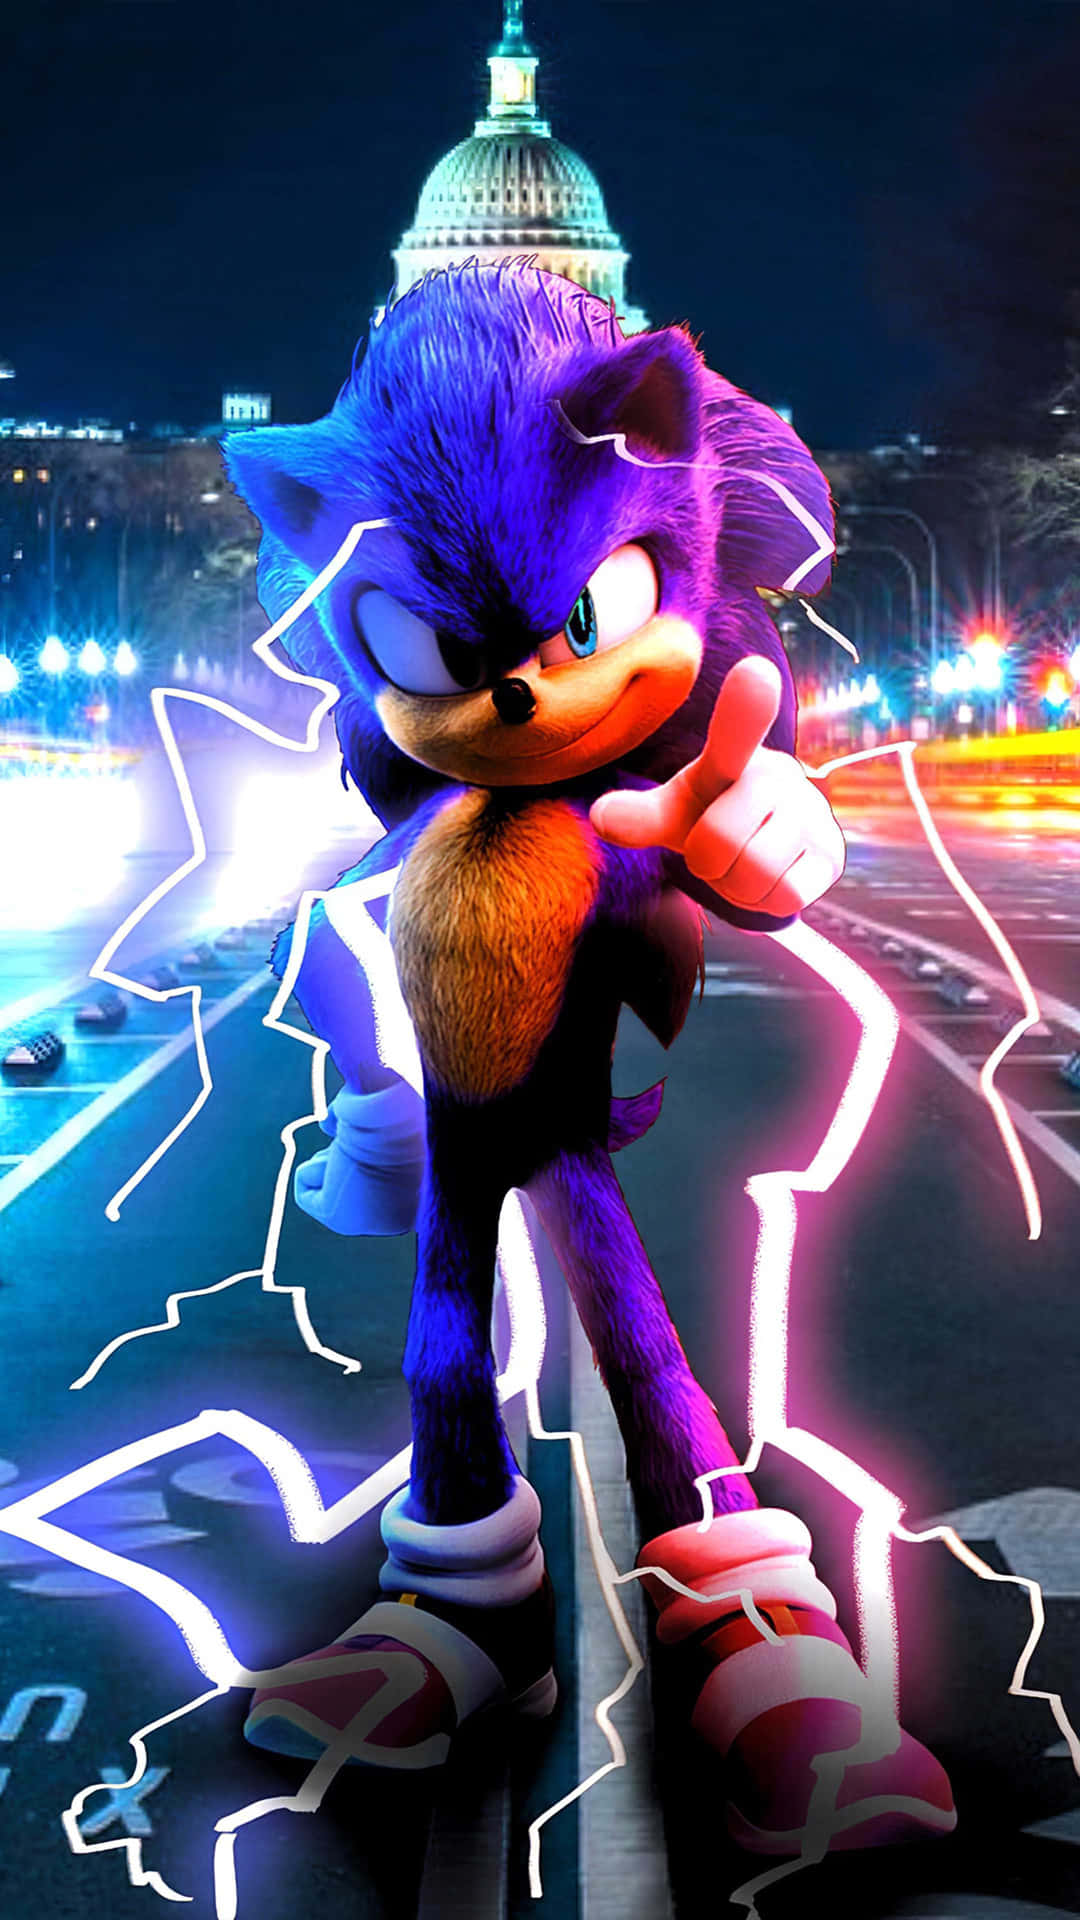 Vaiveloce Come Sonic!